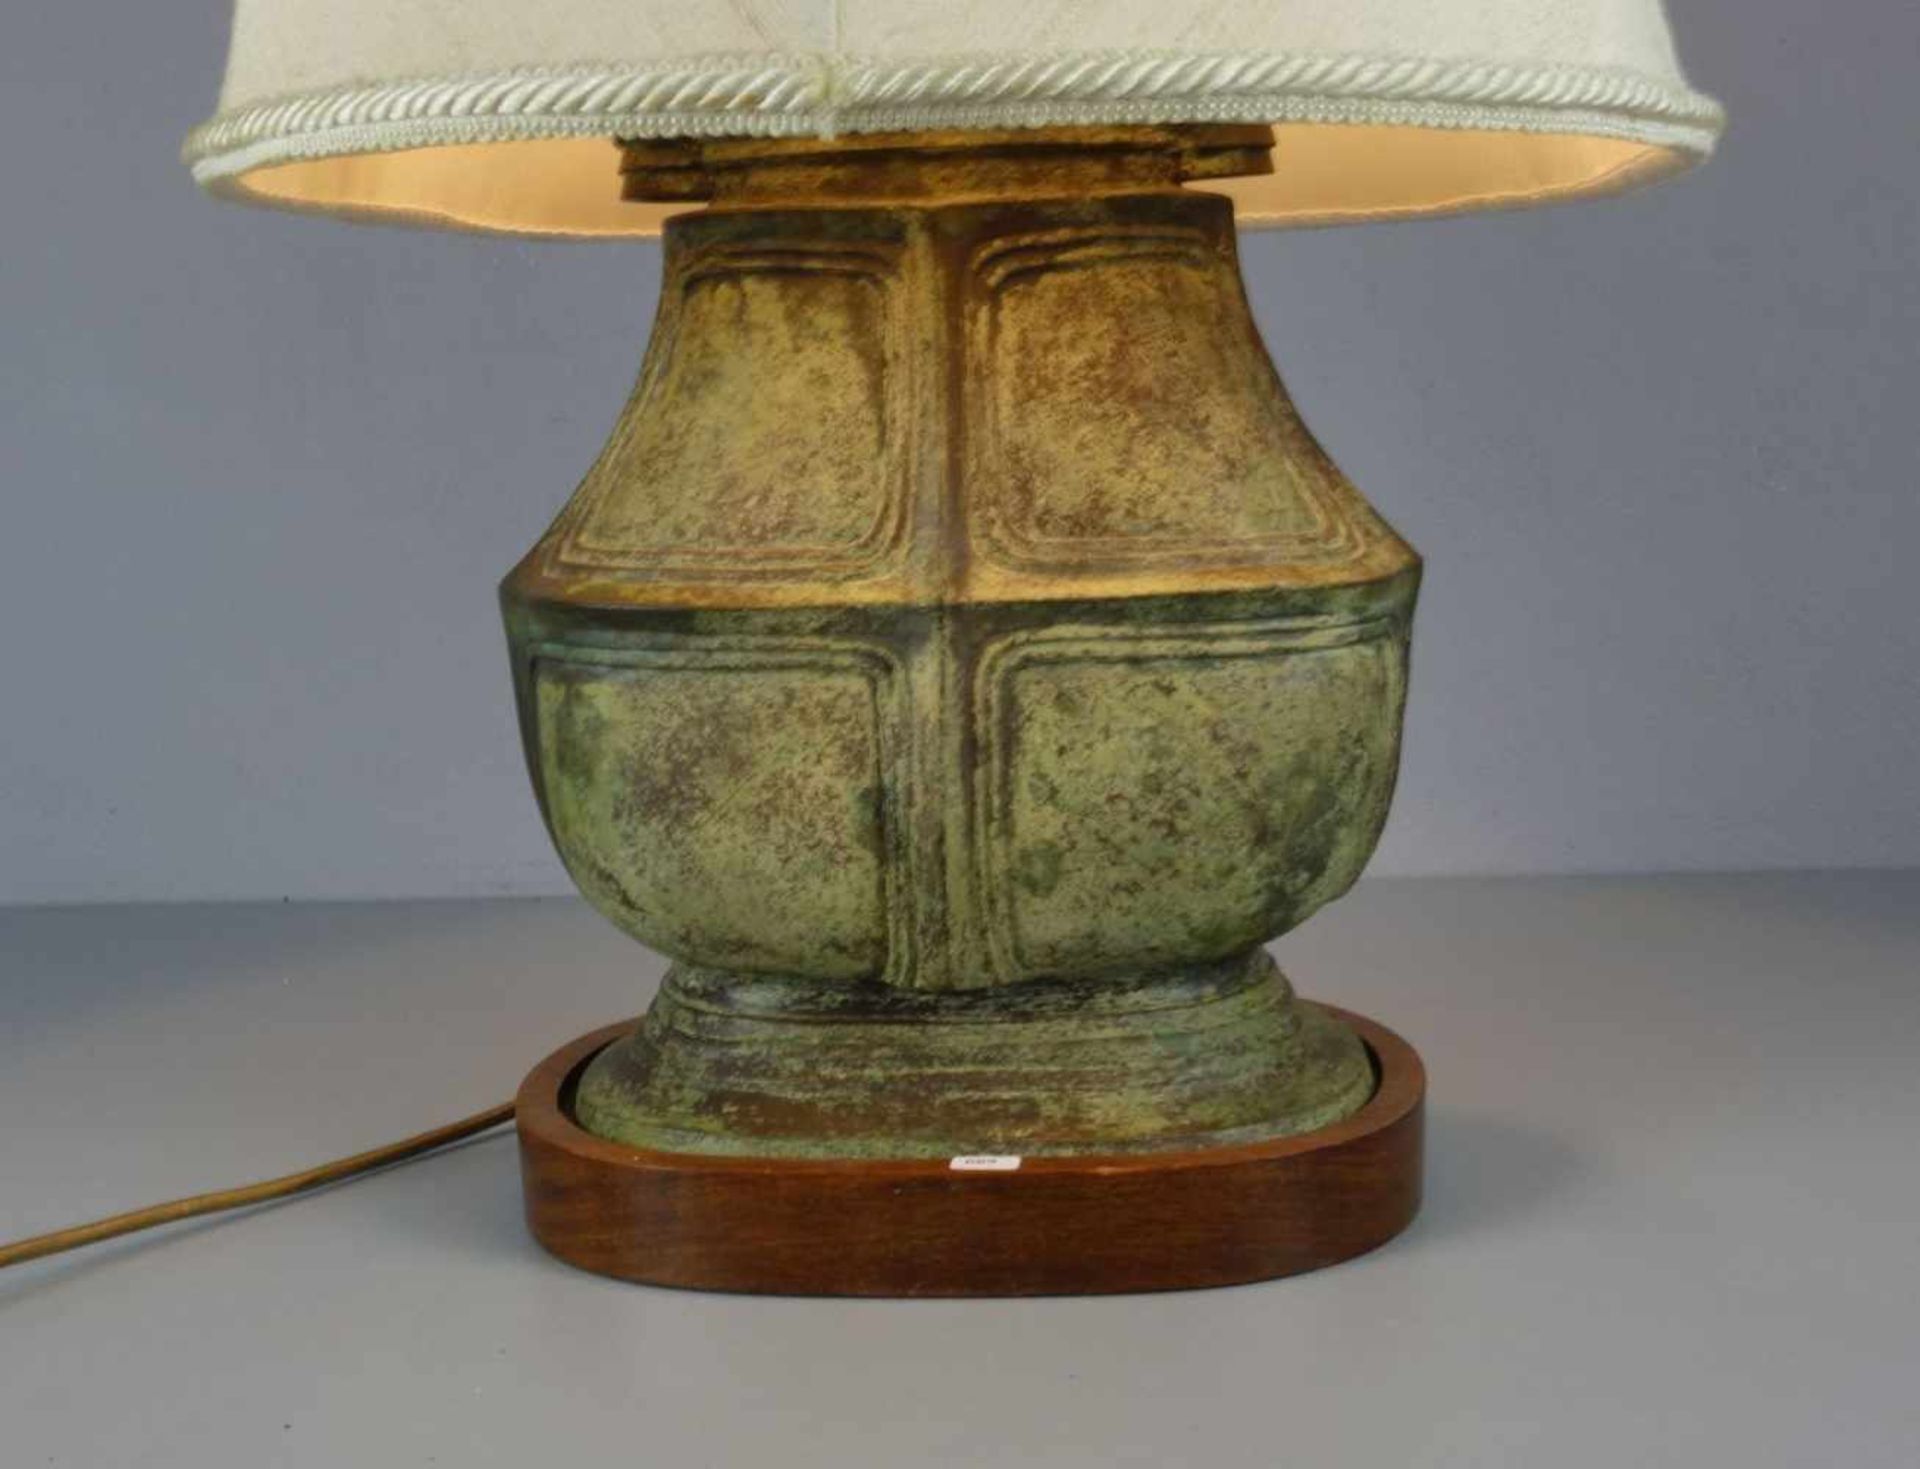 LAMPE / TISCHLAMPE MIT BRONZEVASE / table lamp, zweiflammige Brennstelle. Ovaler Holzstand, Schaft